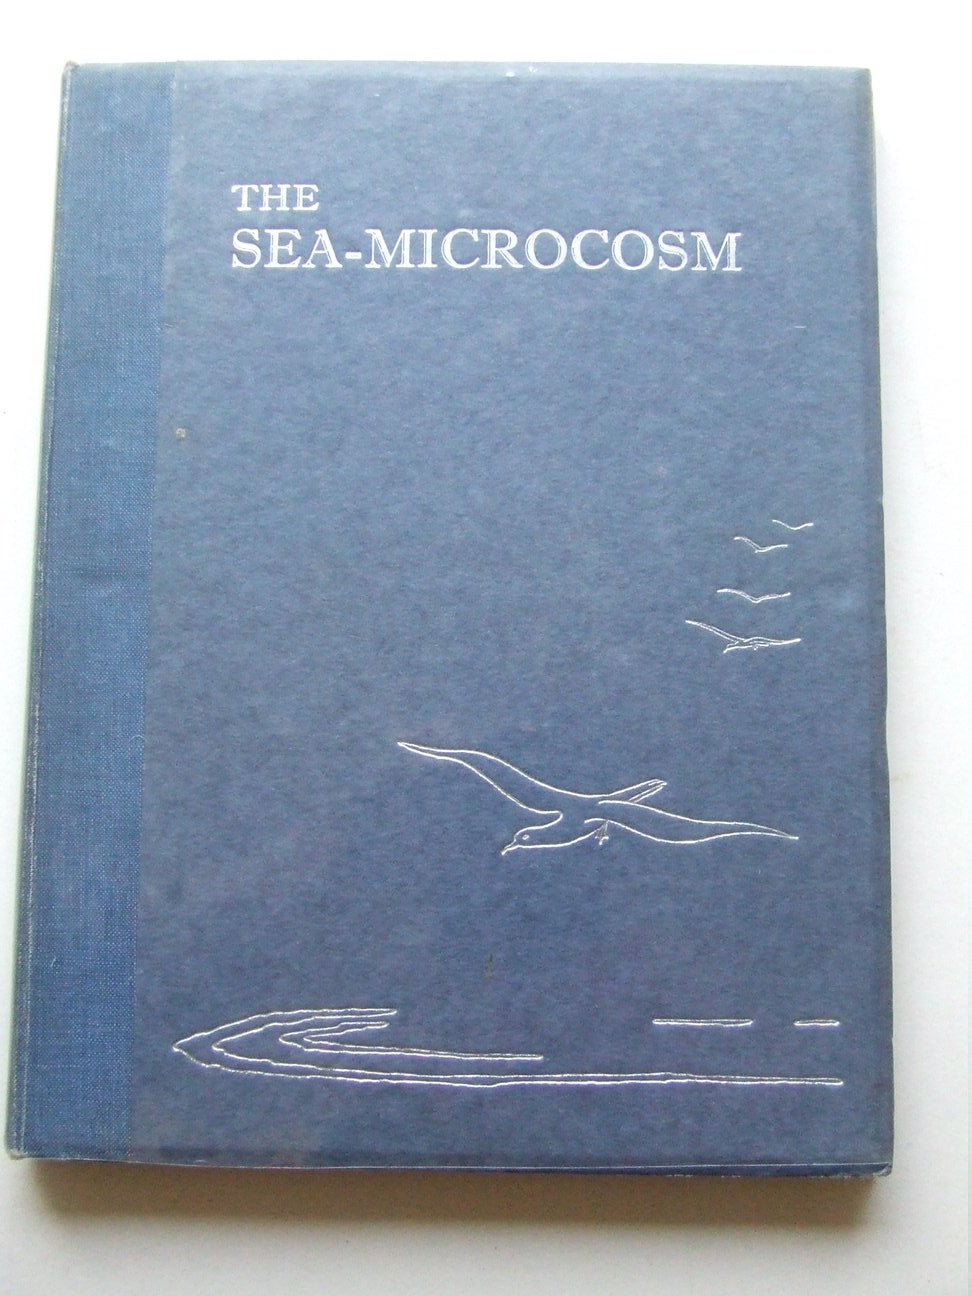 The Sea-Microcosm